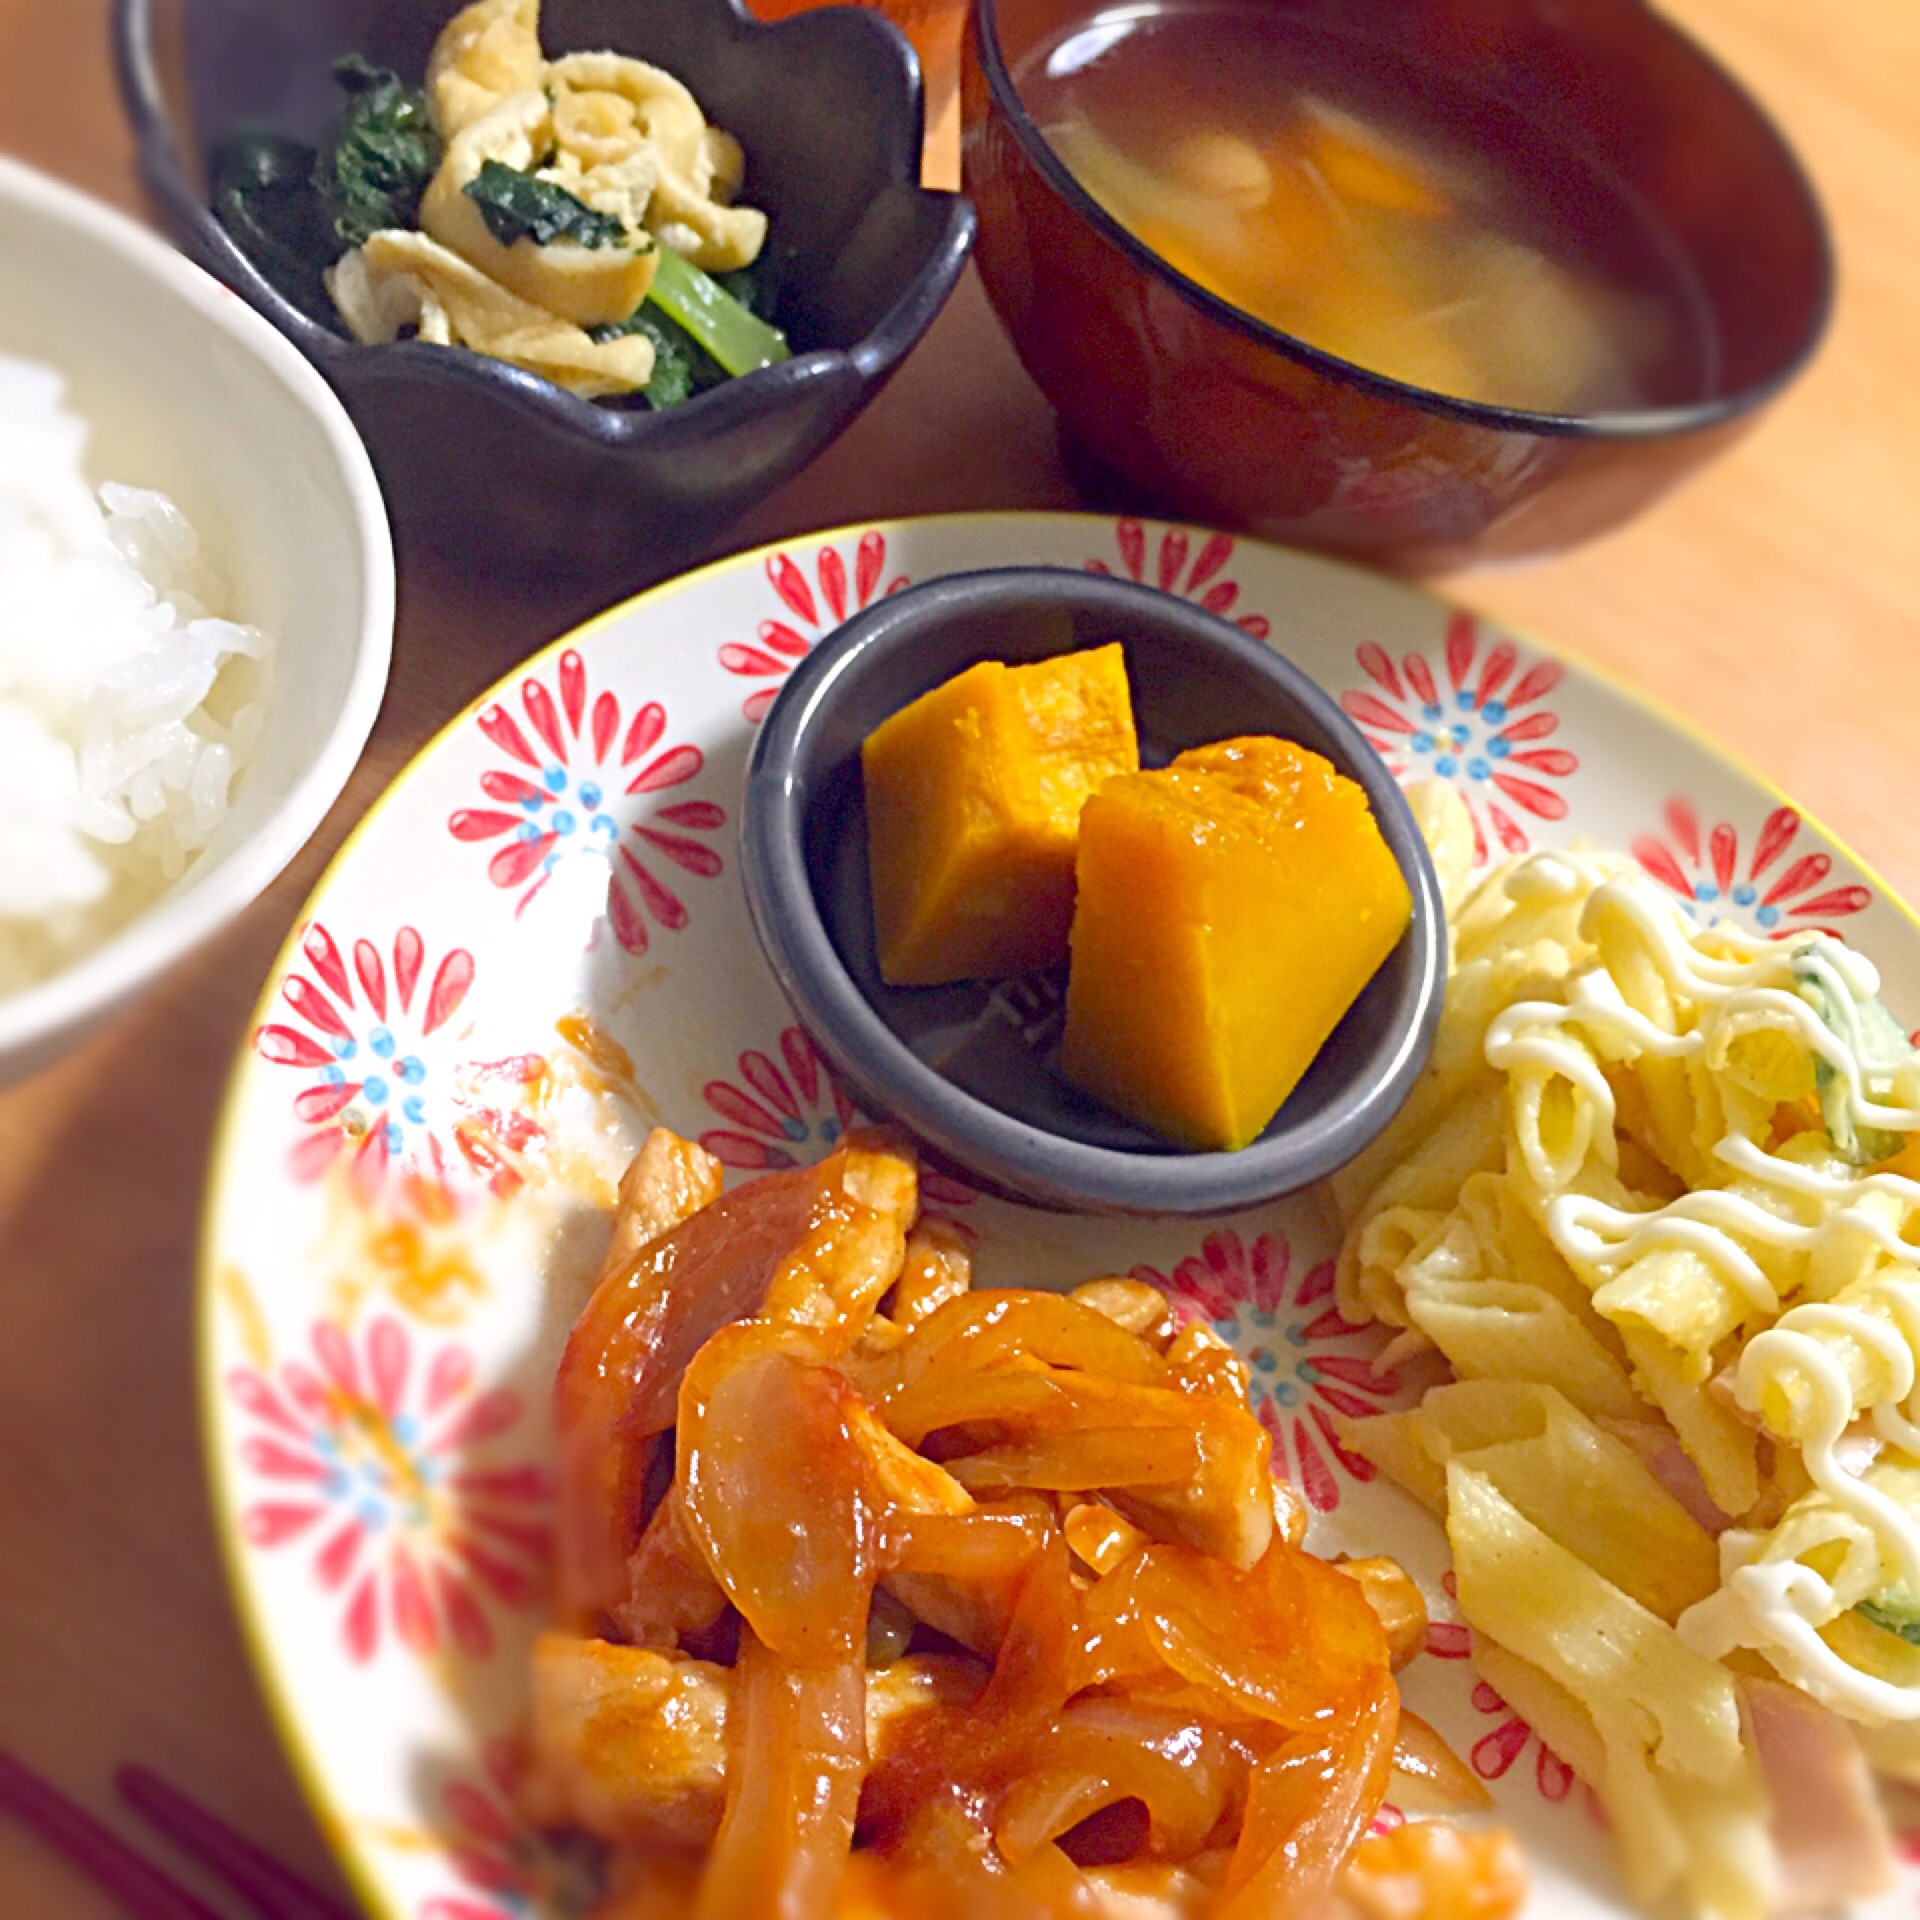 ✱ポークチャップ
✱かぼちゃの煮物
✱マカロニサラダ
✱小松菜の煮浸し
✱コンソメスープ